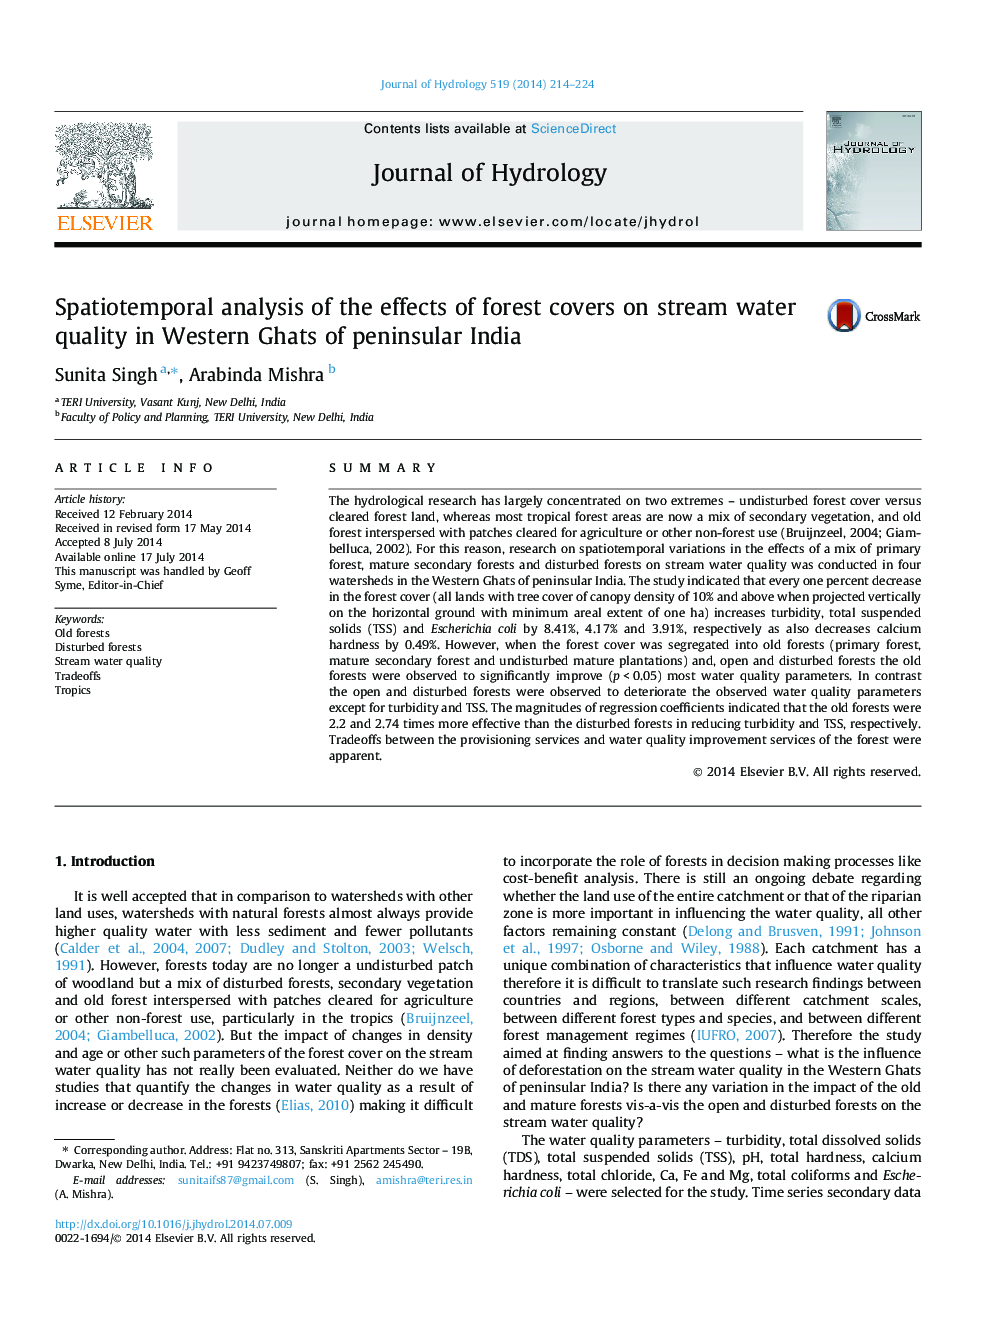 تجزیه و تحلیل اسپتیوتی موروثی از اثرات جنگلها بر کیفیت آب جریان در غات غربی هند شبه جزیره 